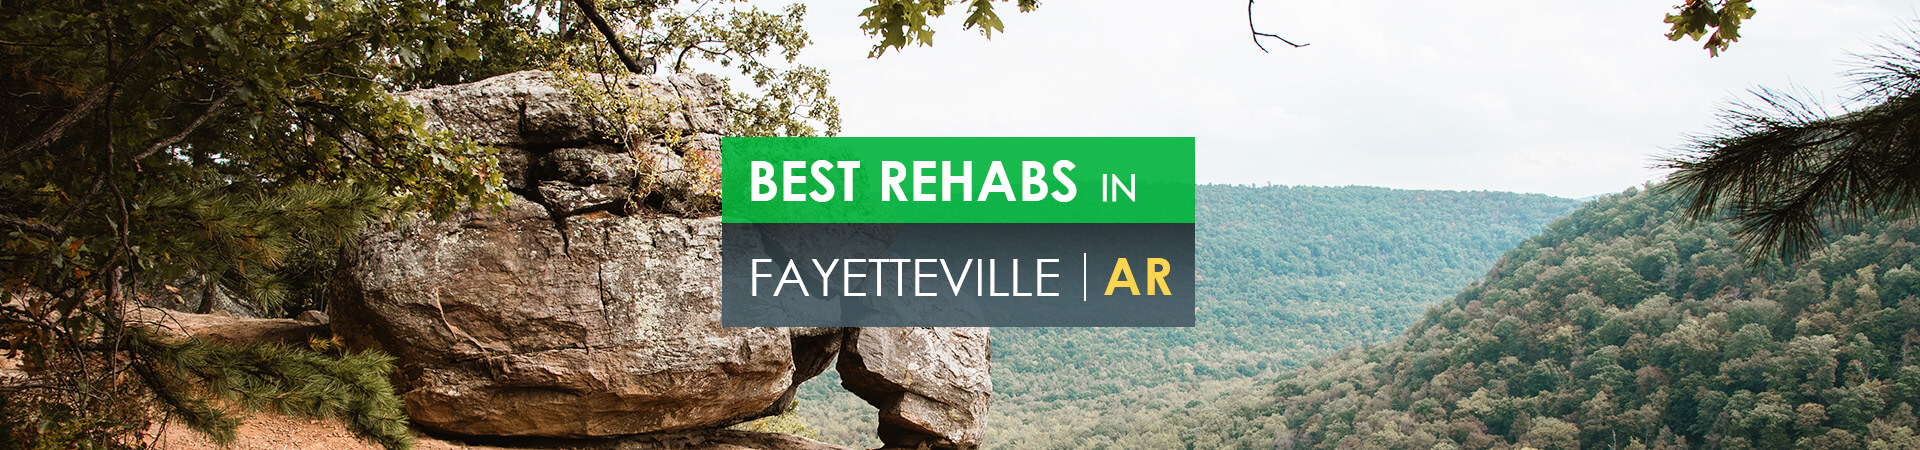 Best rehabs in Fayetteville, AR